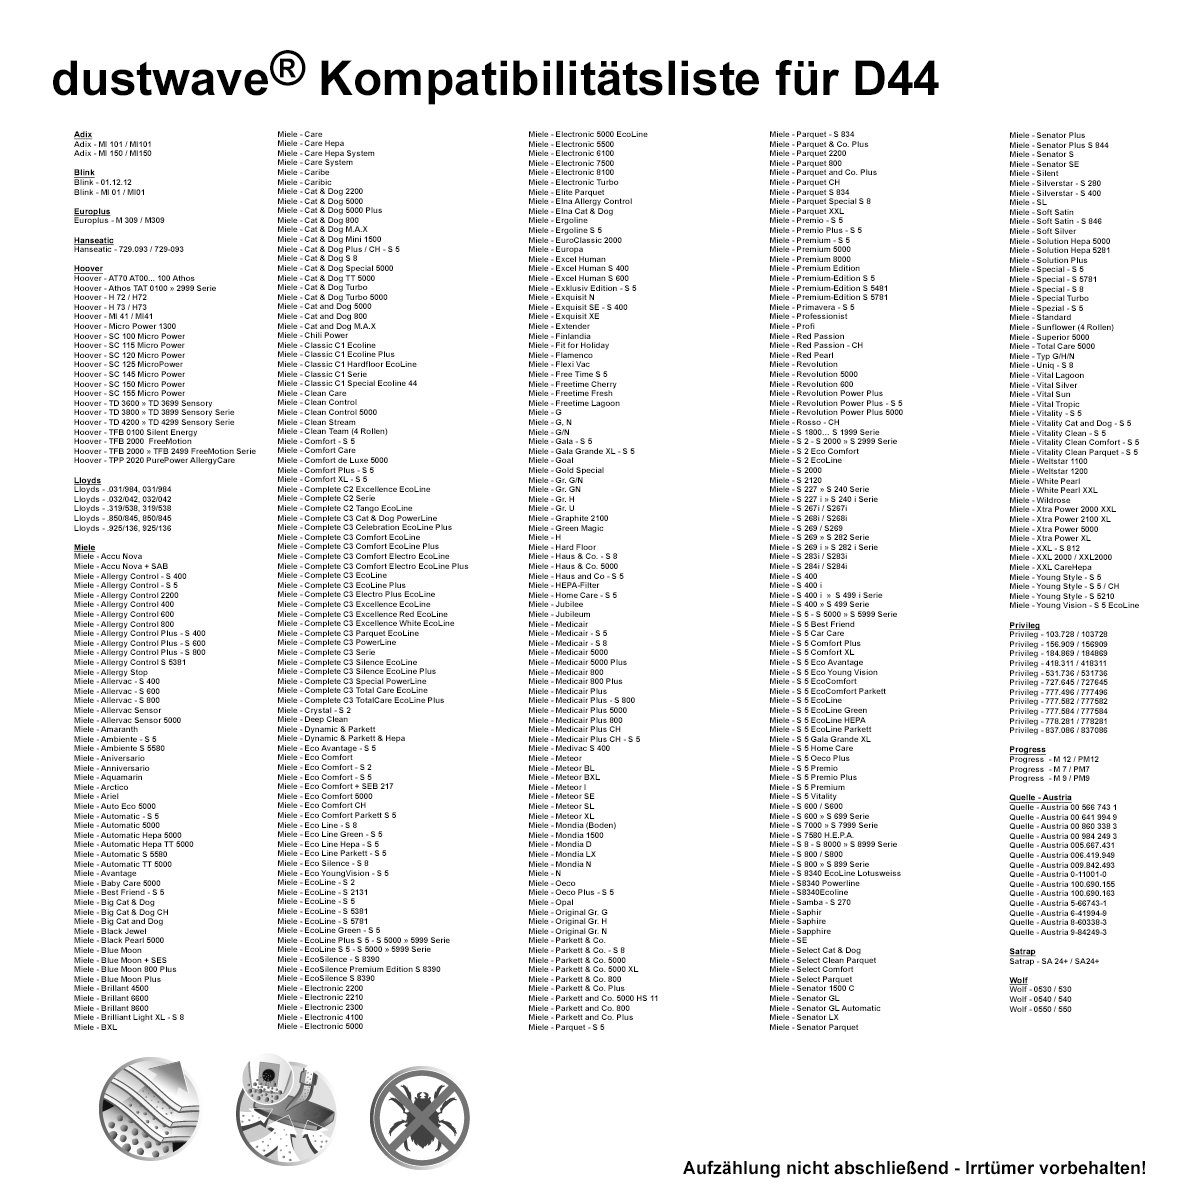 Dustwave Staubsaugerbeutel AmazonBasics + St., Staubsaugerbeutel - AmazonBasics Test-Set, 1 1 15x15cm Standard - passend für (ca. 1 zuschneidbar) Hepa-Filter M11 Test-Set, M11